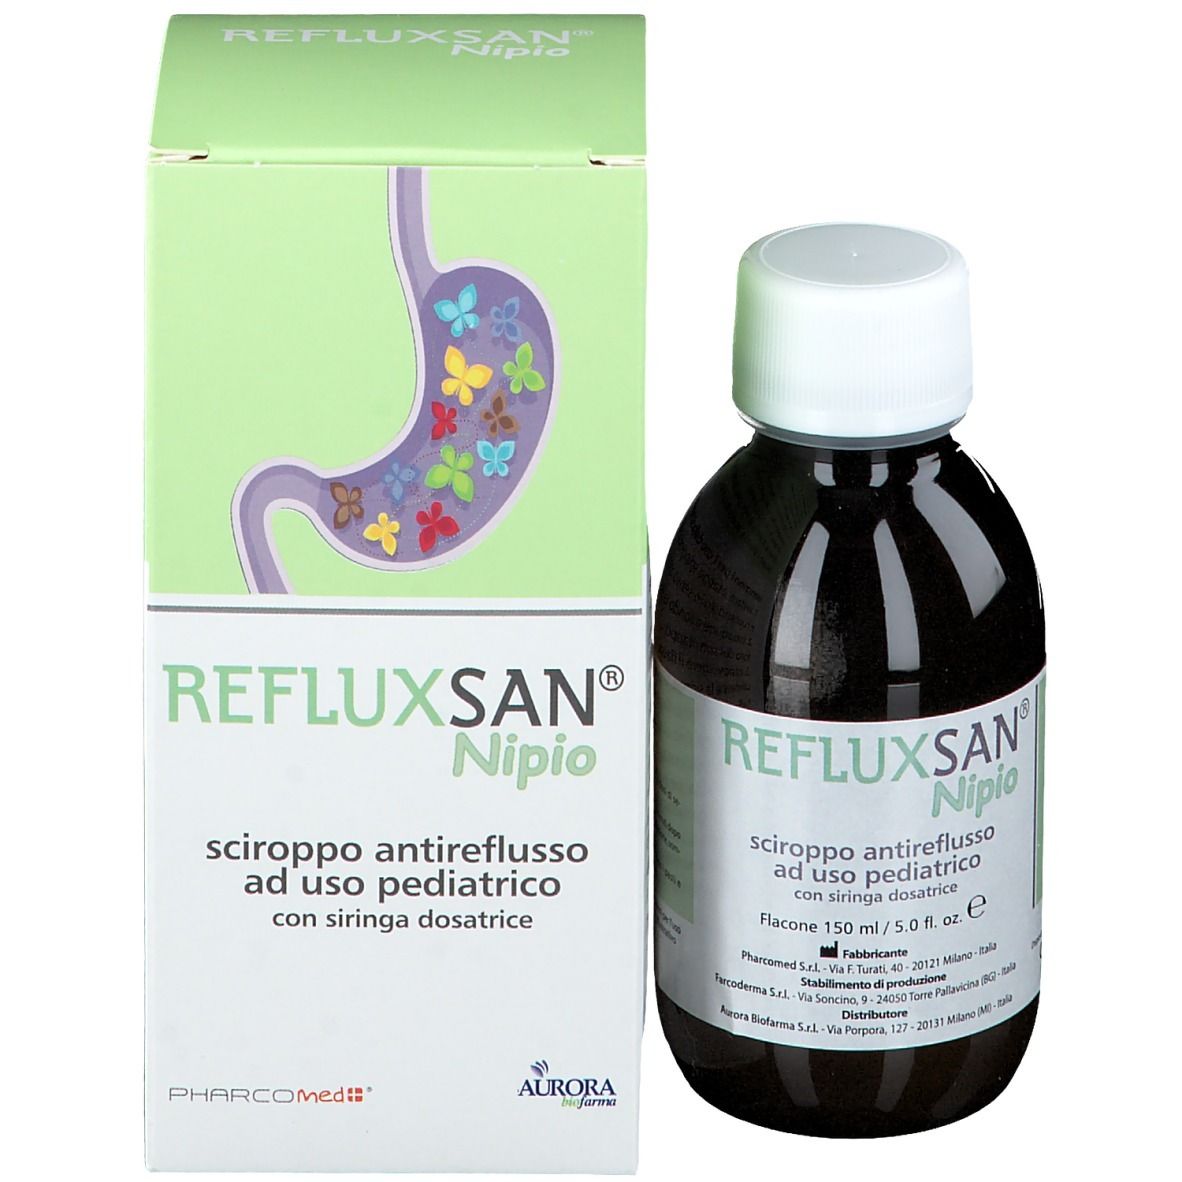 Refluxsan® Nipio